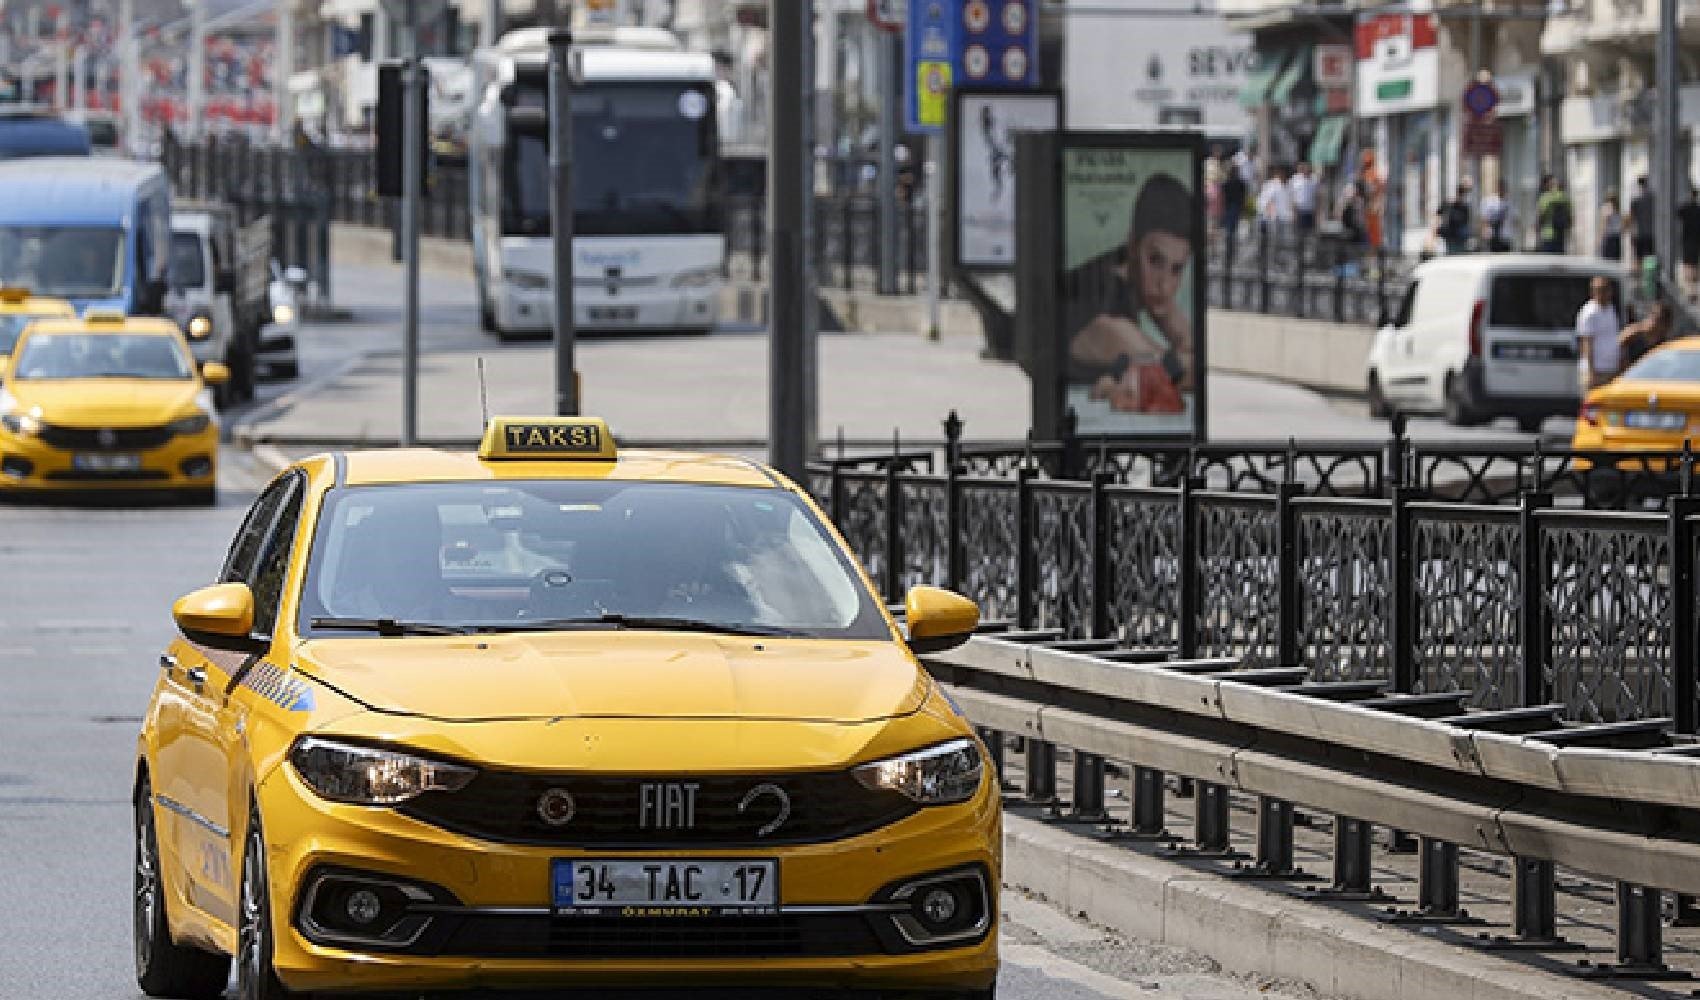 Kadıköy’de taksiciyi bıçaklayan üç çocuk yakalandı